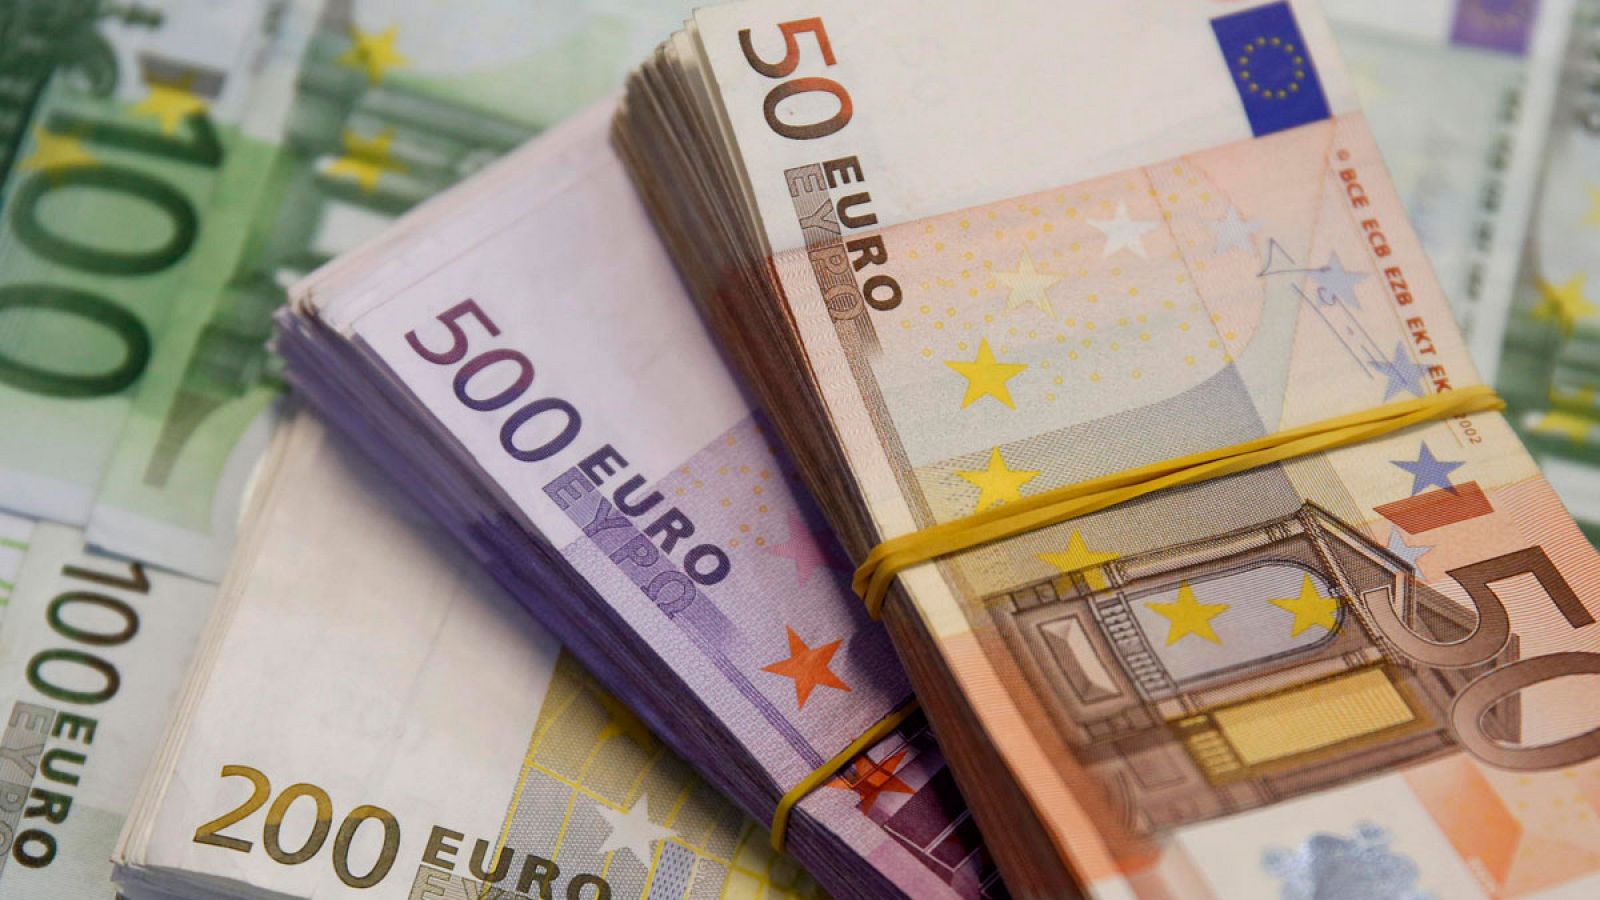 Imagen de distintas denominaciones de billetes de euro